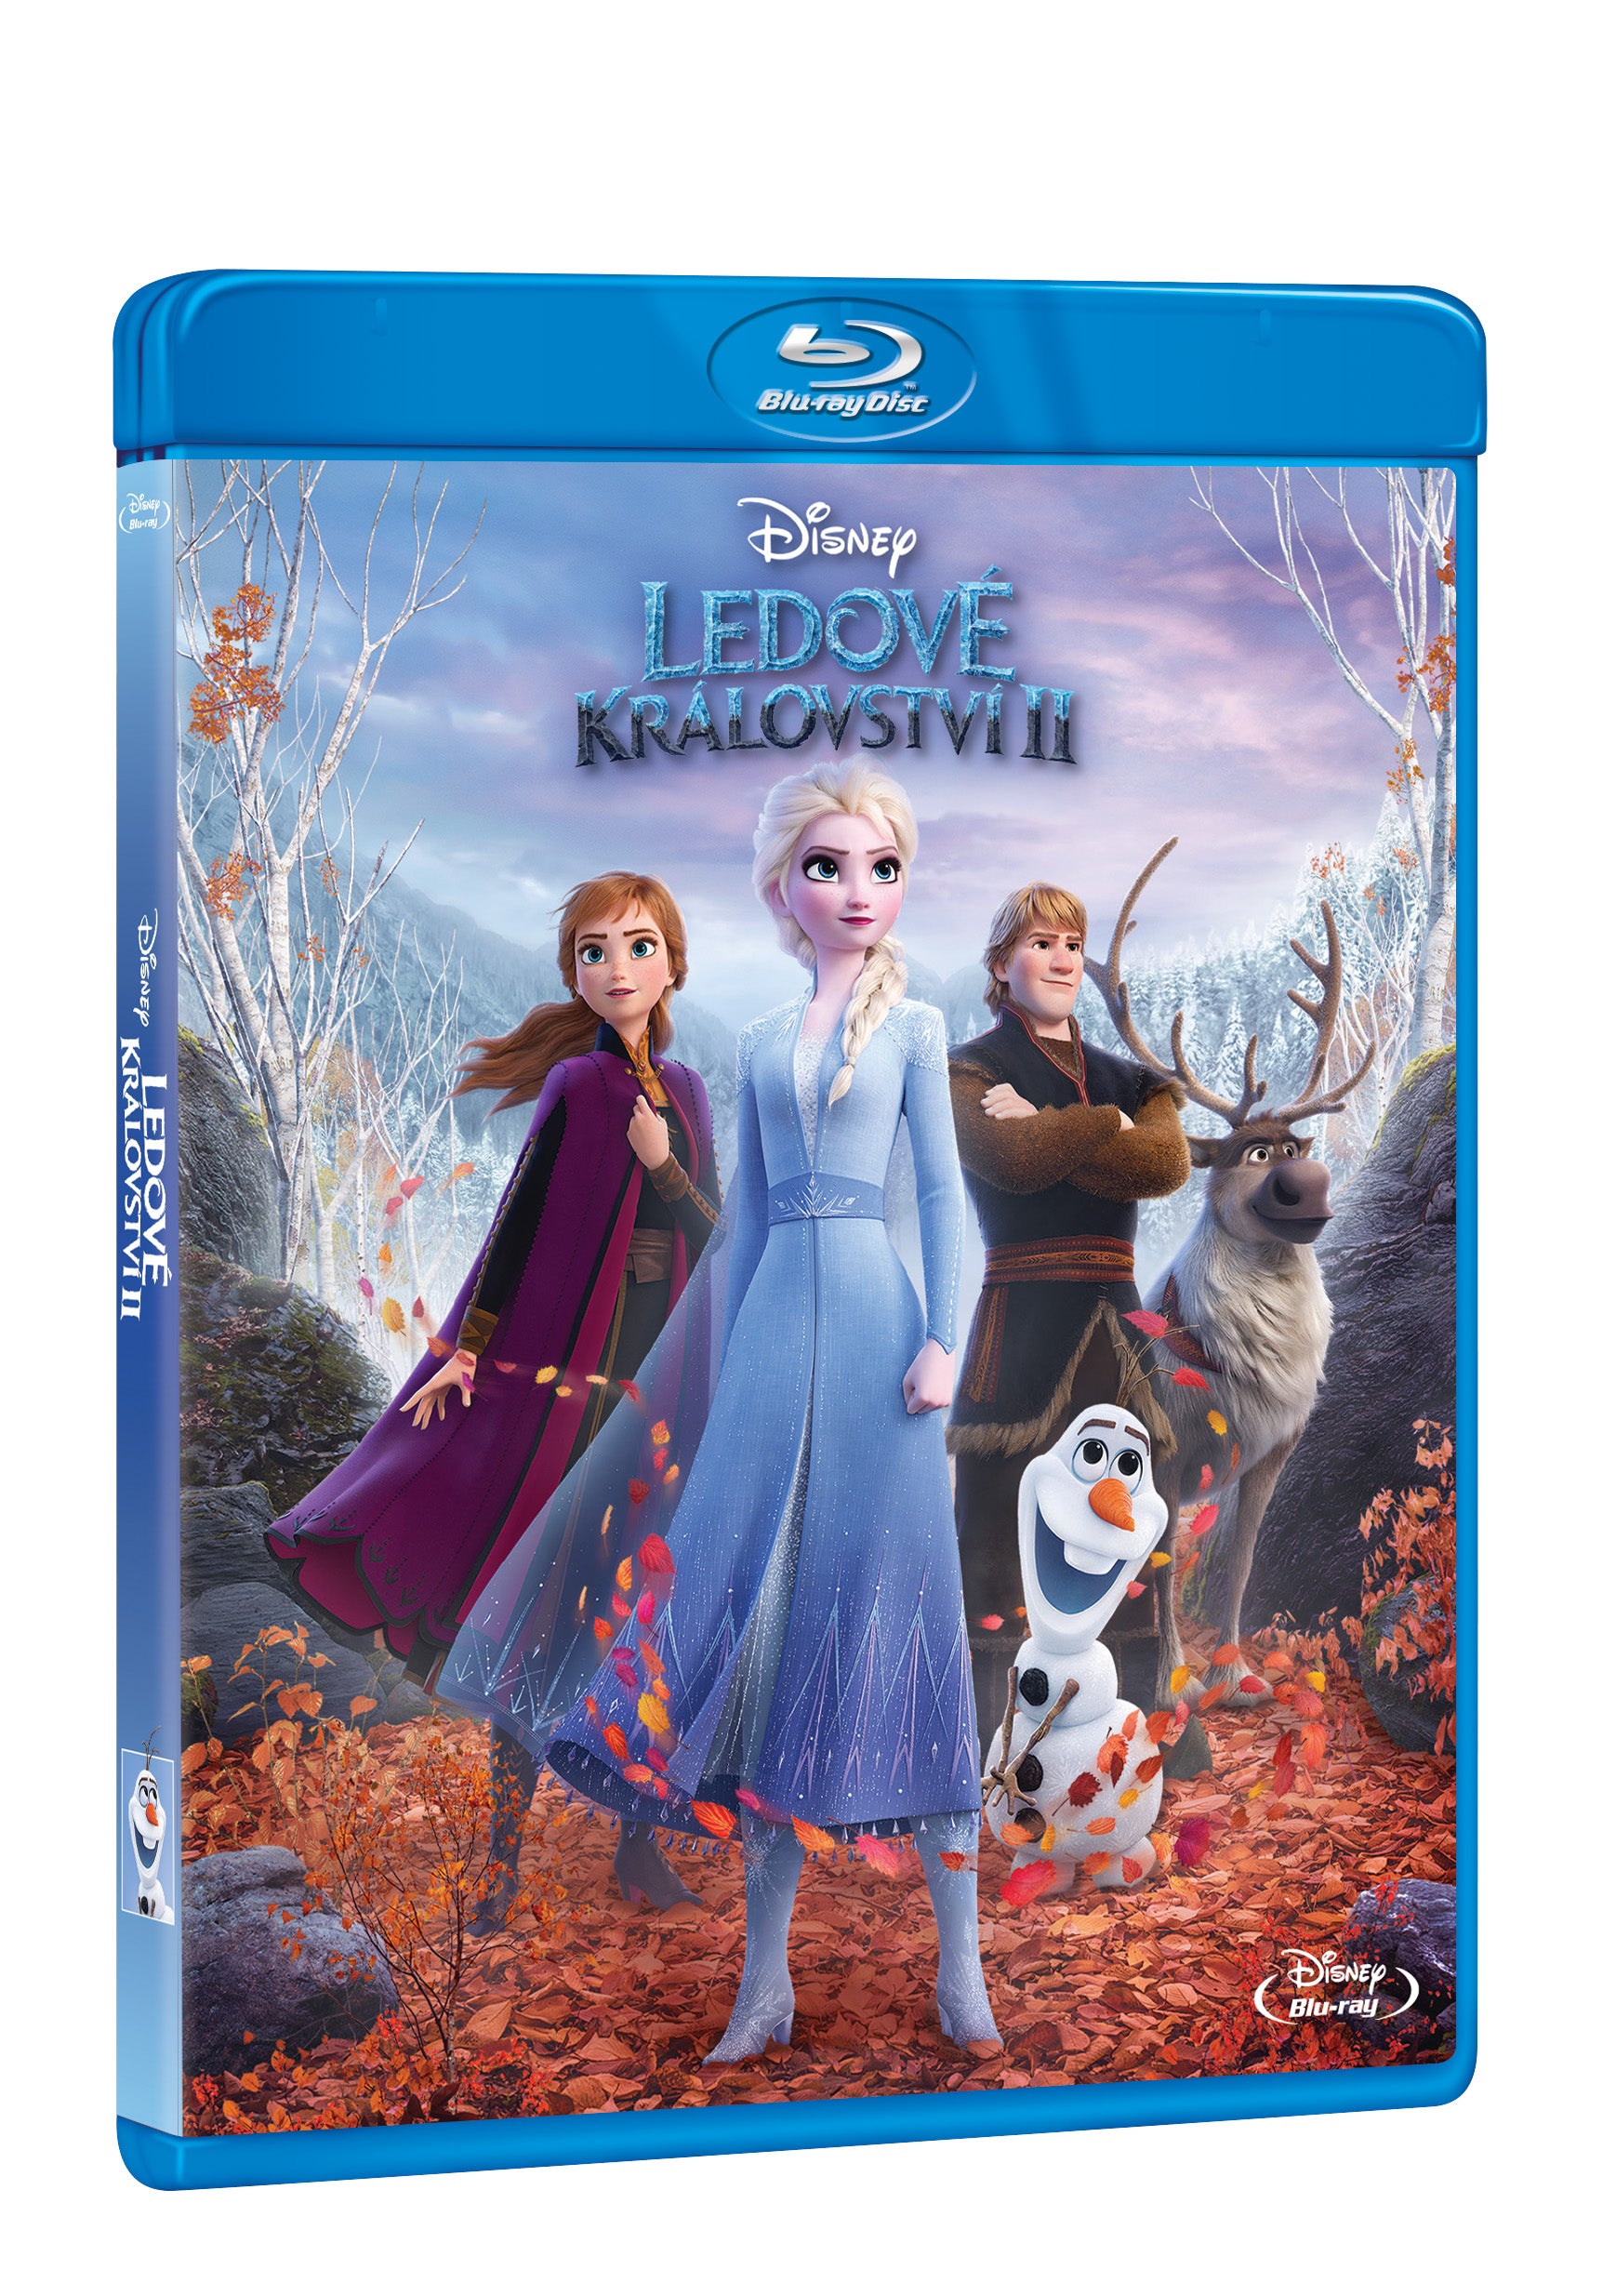 Ledove kralovstvi 2 BD / Frozen 2 - Czech version